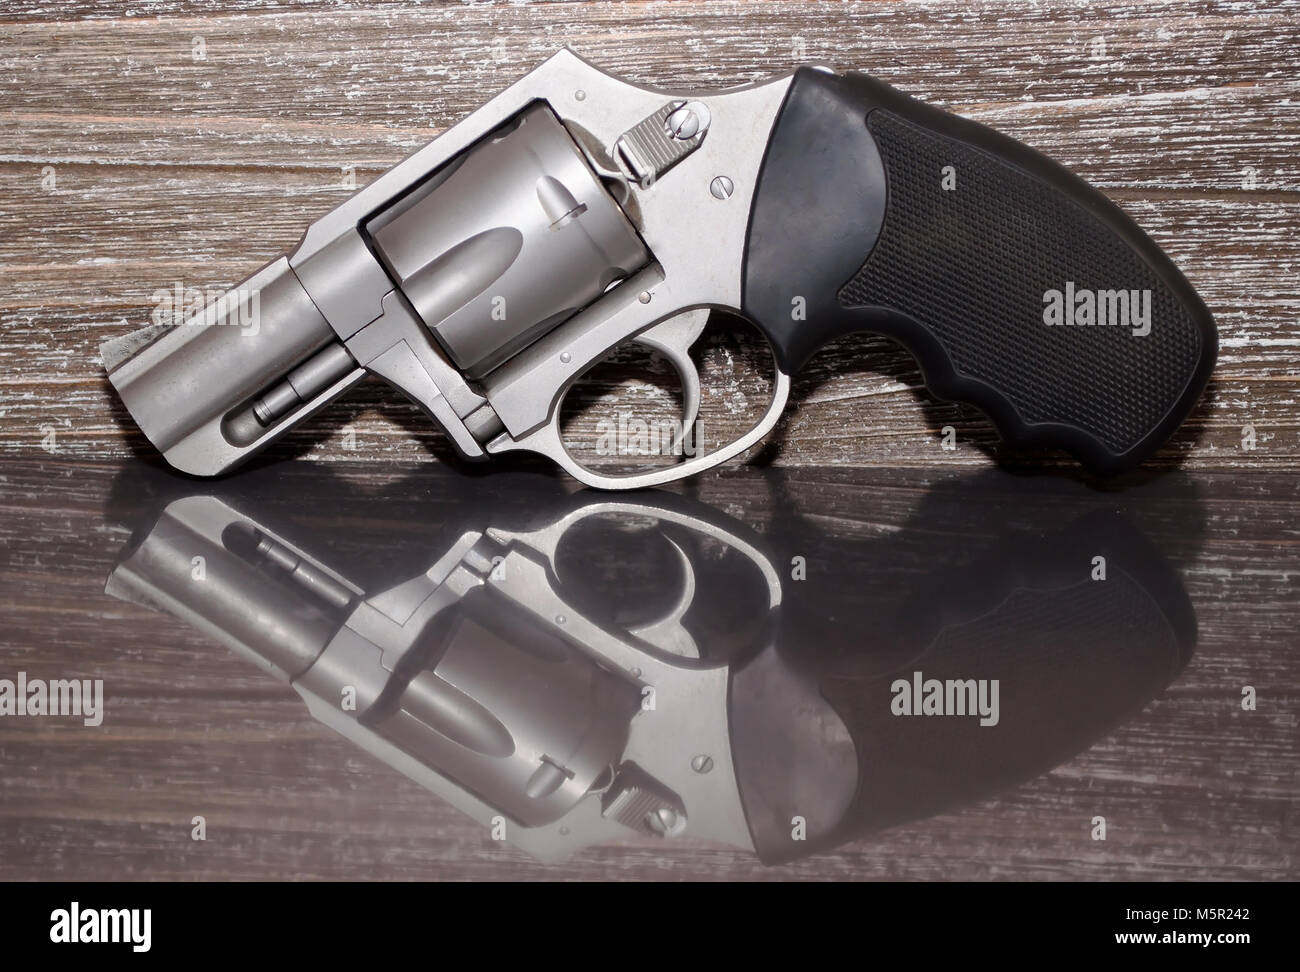 Un acciaio inossidabile .357 revolver Magnum su una superficie riflettente con un background in legno Foto Stock